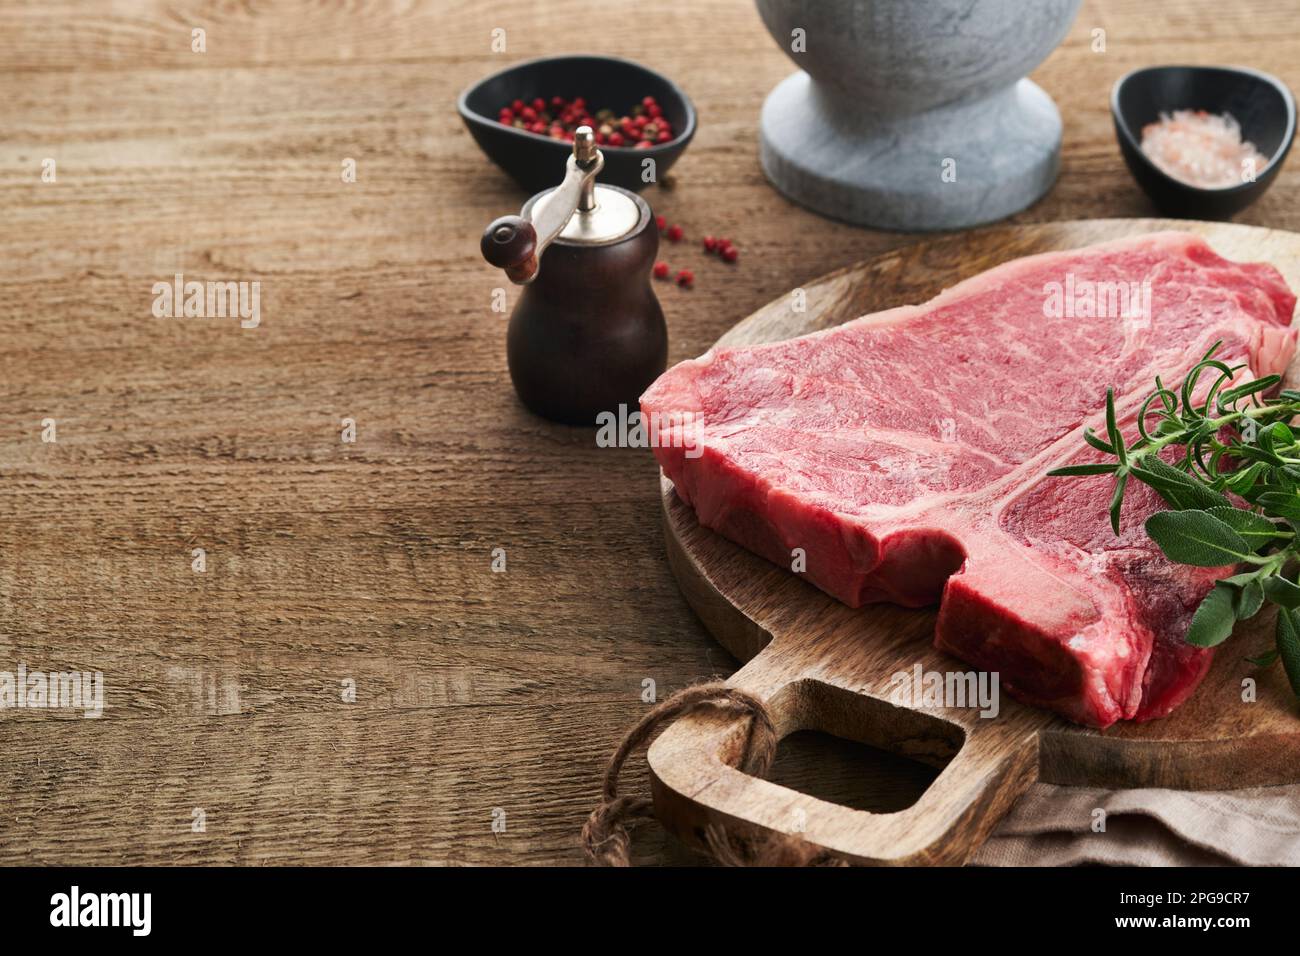 Dickes rohes T-Bone Steak. Trocken gereiftes rohes T-Bone- oder Porterhouse-Rindfleisch-Steak mit Kräutern und Salz auf dunklem Hintergrund. Selektiver Fokus und Kopierbereich. Stockfoto